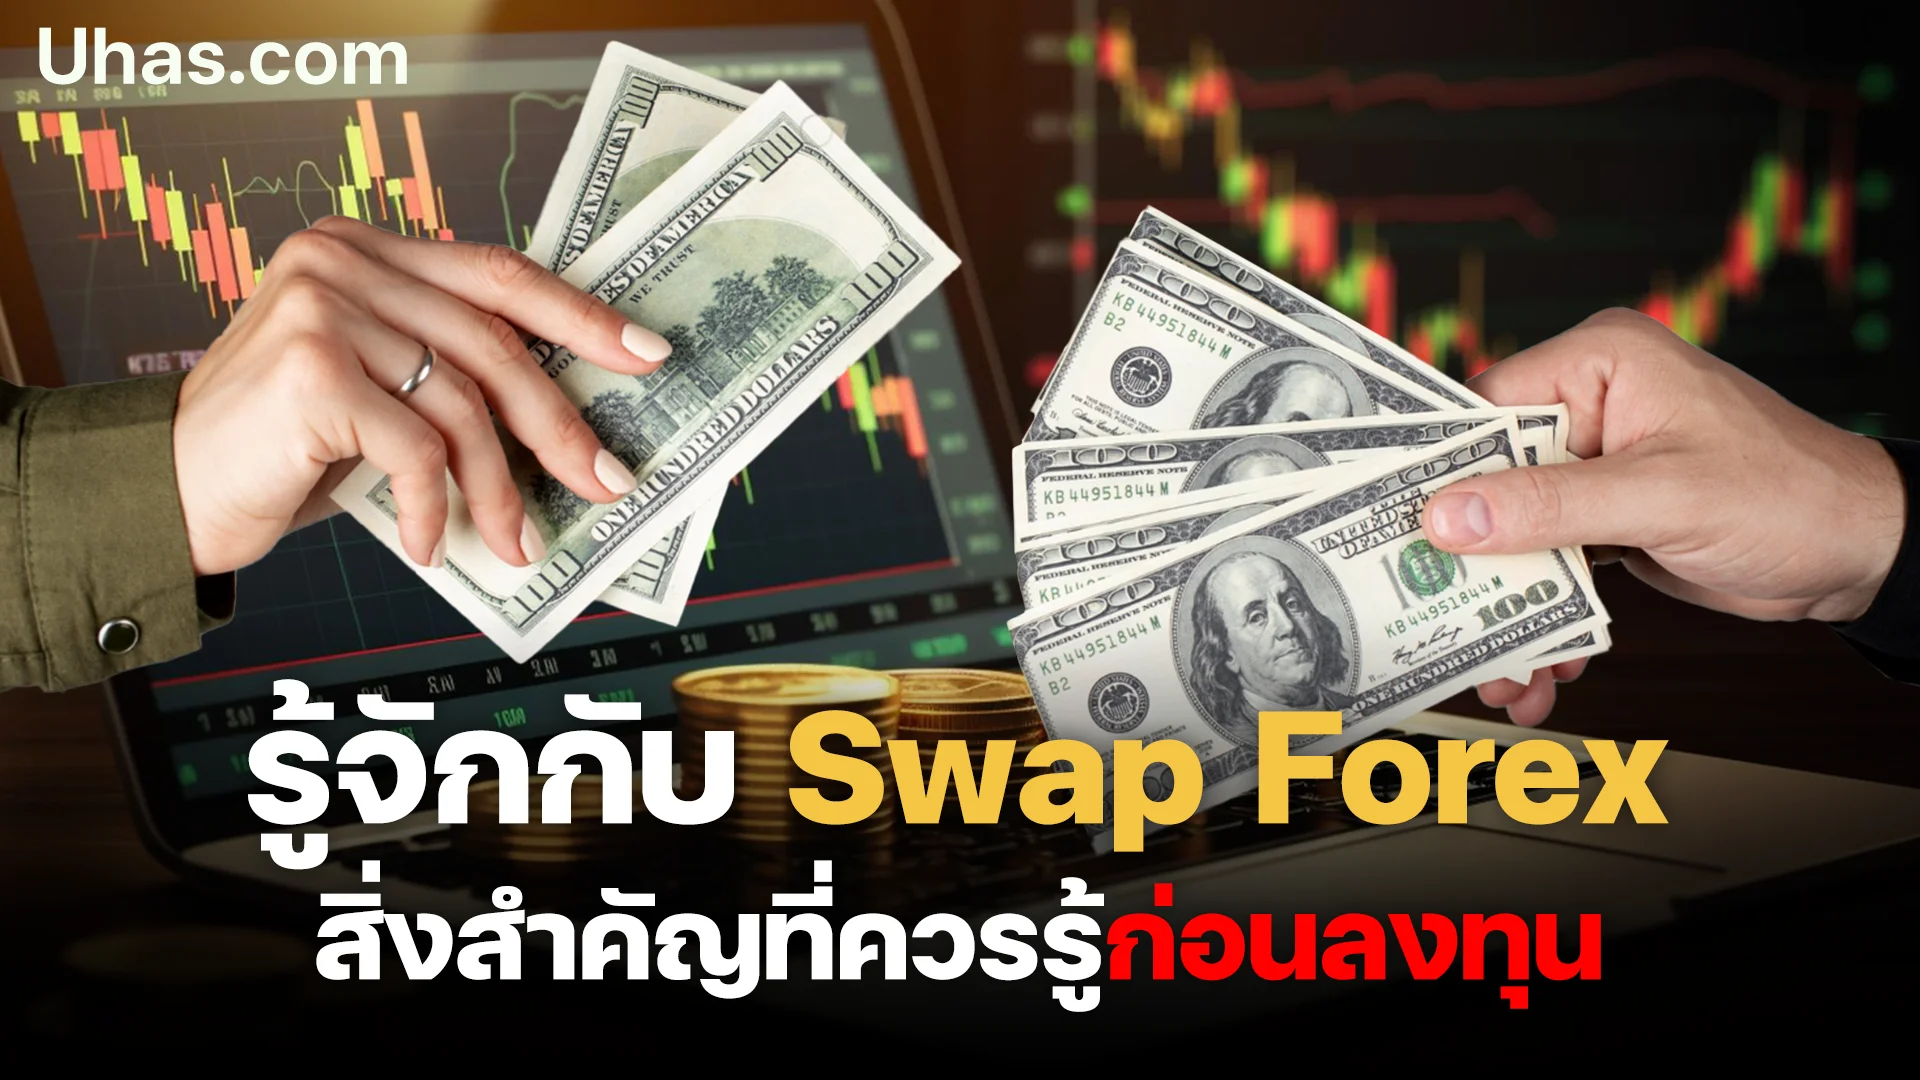 ค่า Swap Forex สำคัญอย่างไรต่อการลงทุน